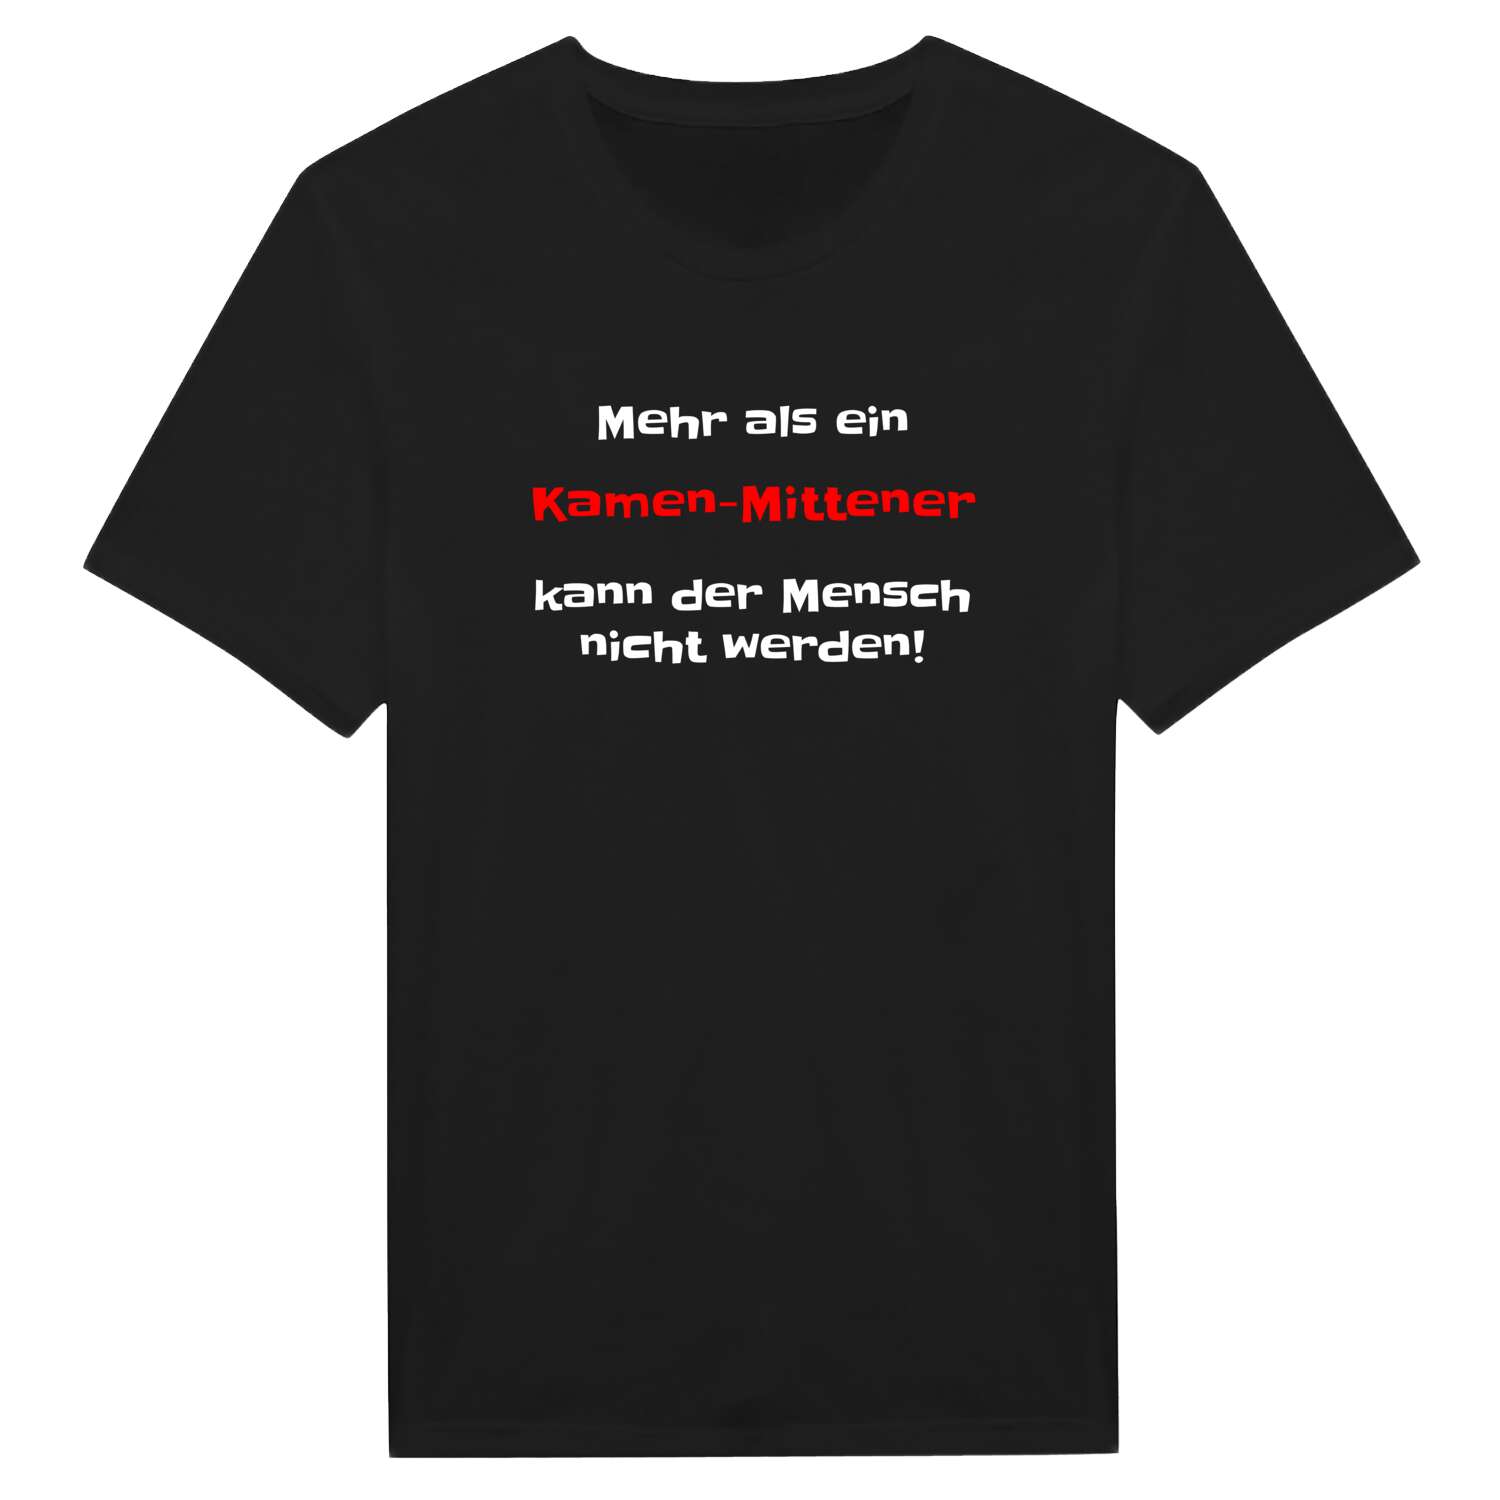 Kamen-Mitte T-Shirt »Mehr als ein«